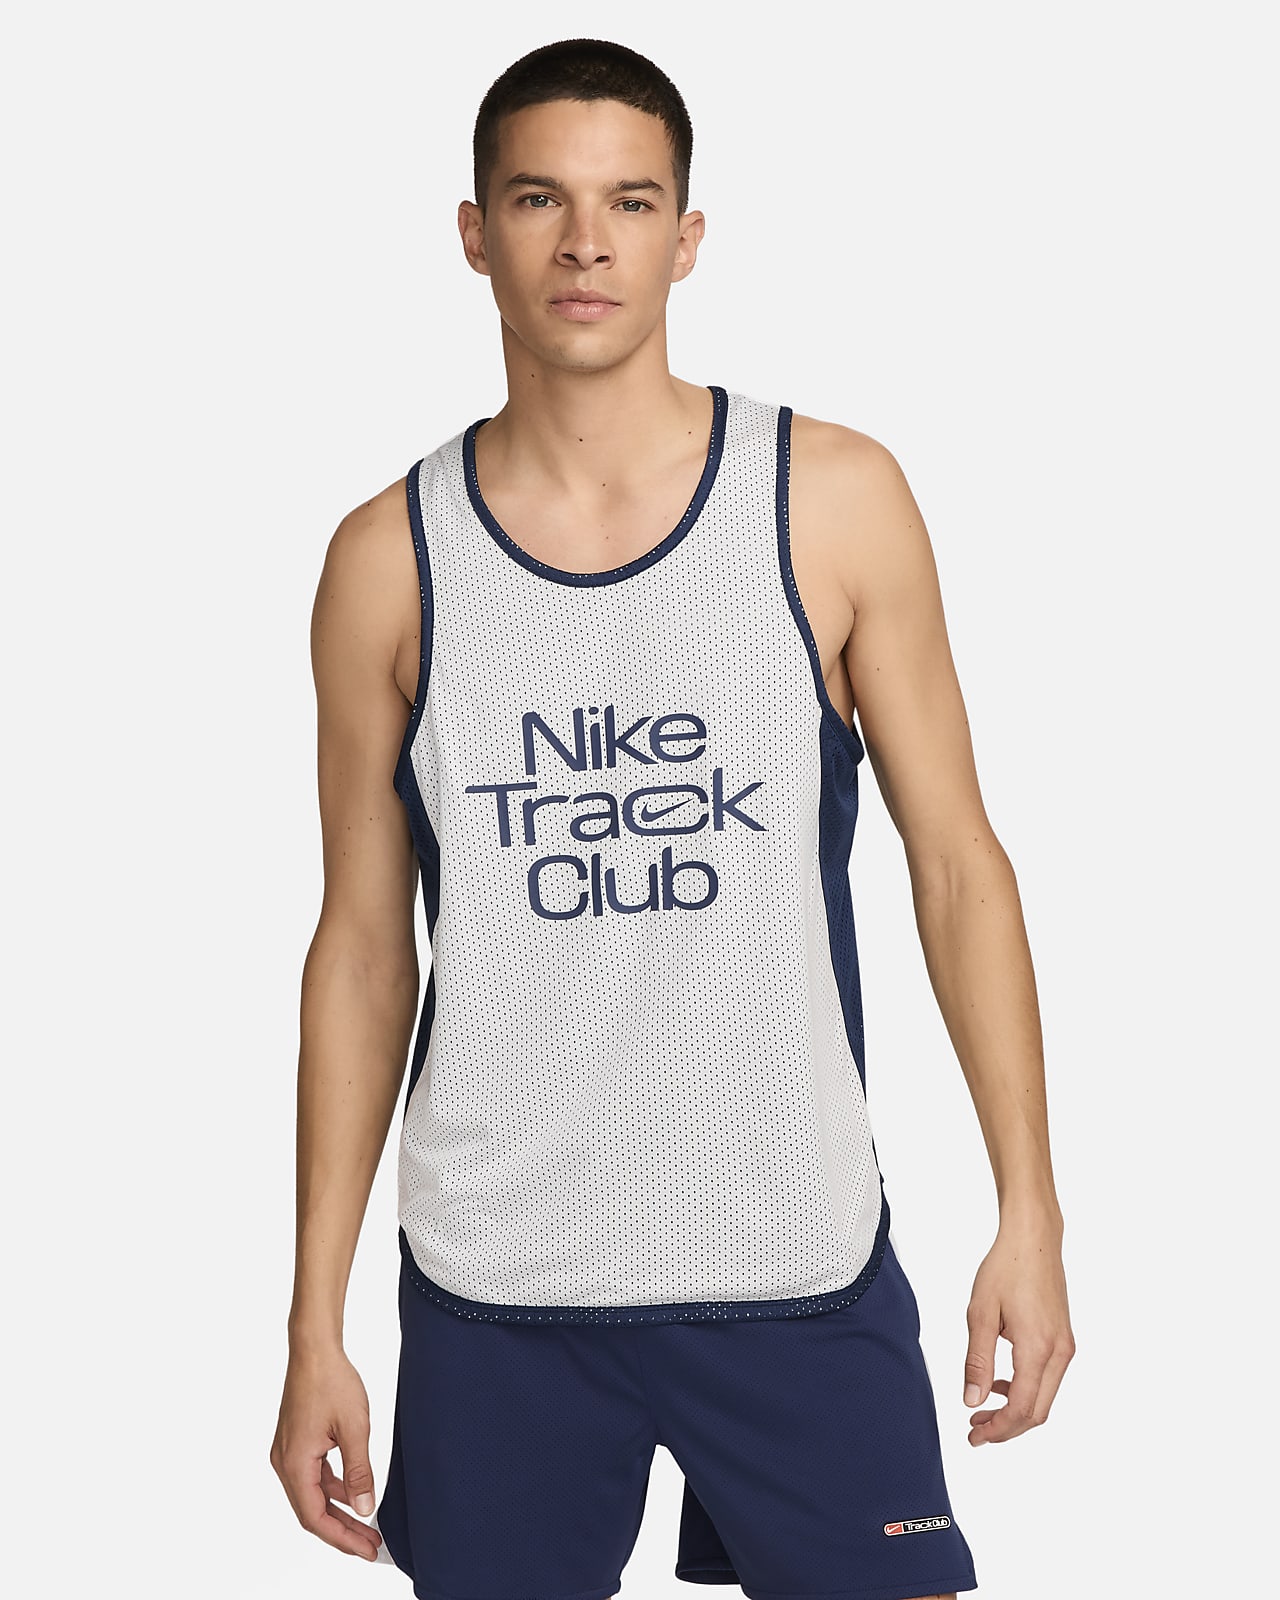 Nike Track Club Men's Dri-FIT Running Singlet